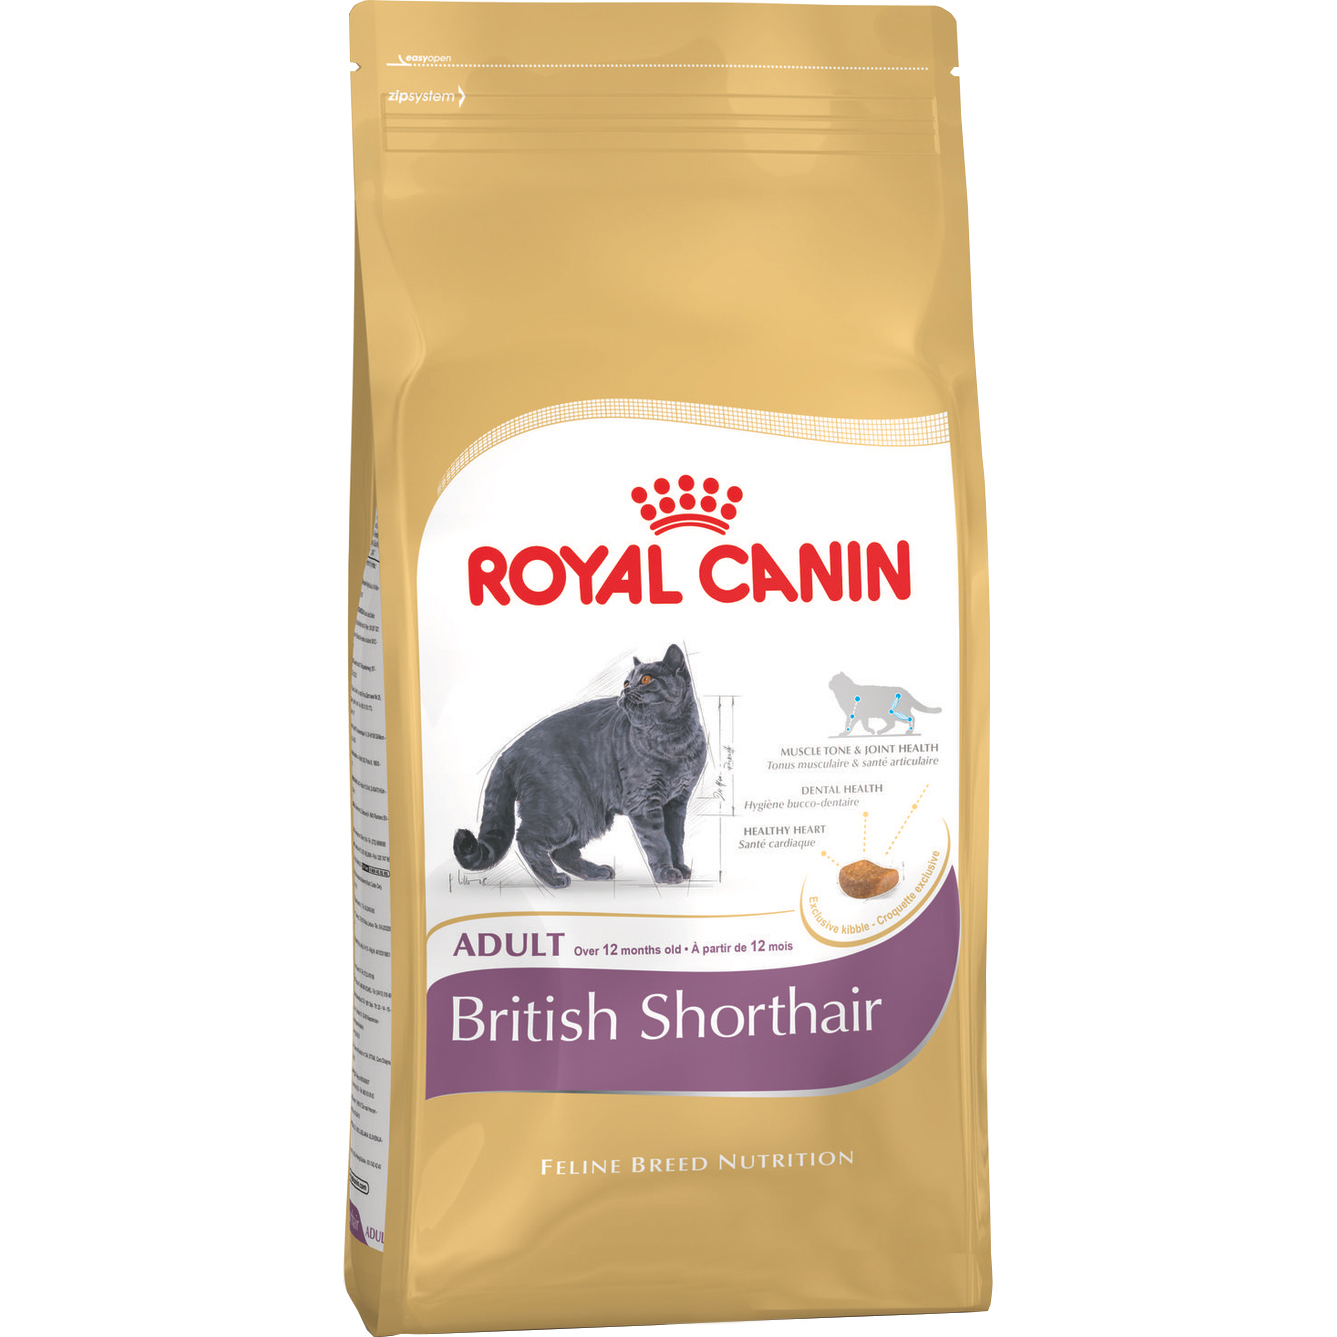 Корм для кошек Royal Canin British Shorthair Adult 400 г royal canin golden retriever adult полнорационный сухой корм для взрослых собак породы золотистый ретривер старше 15 месяцев 3 кг